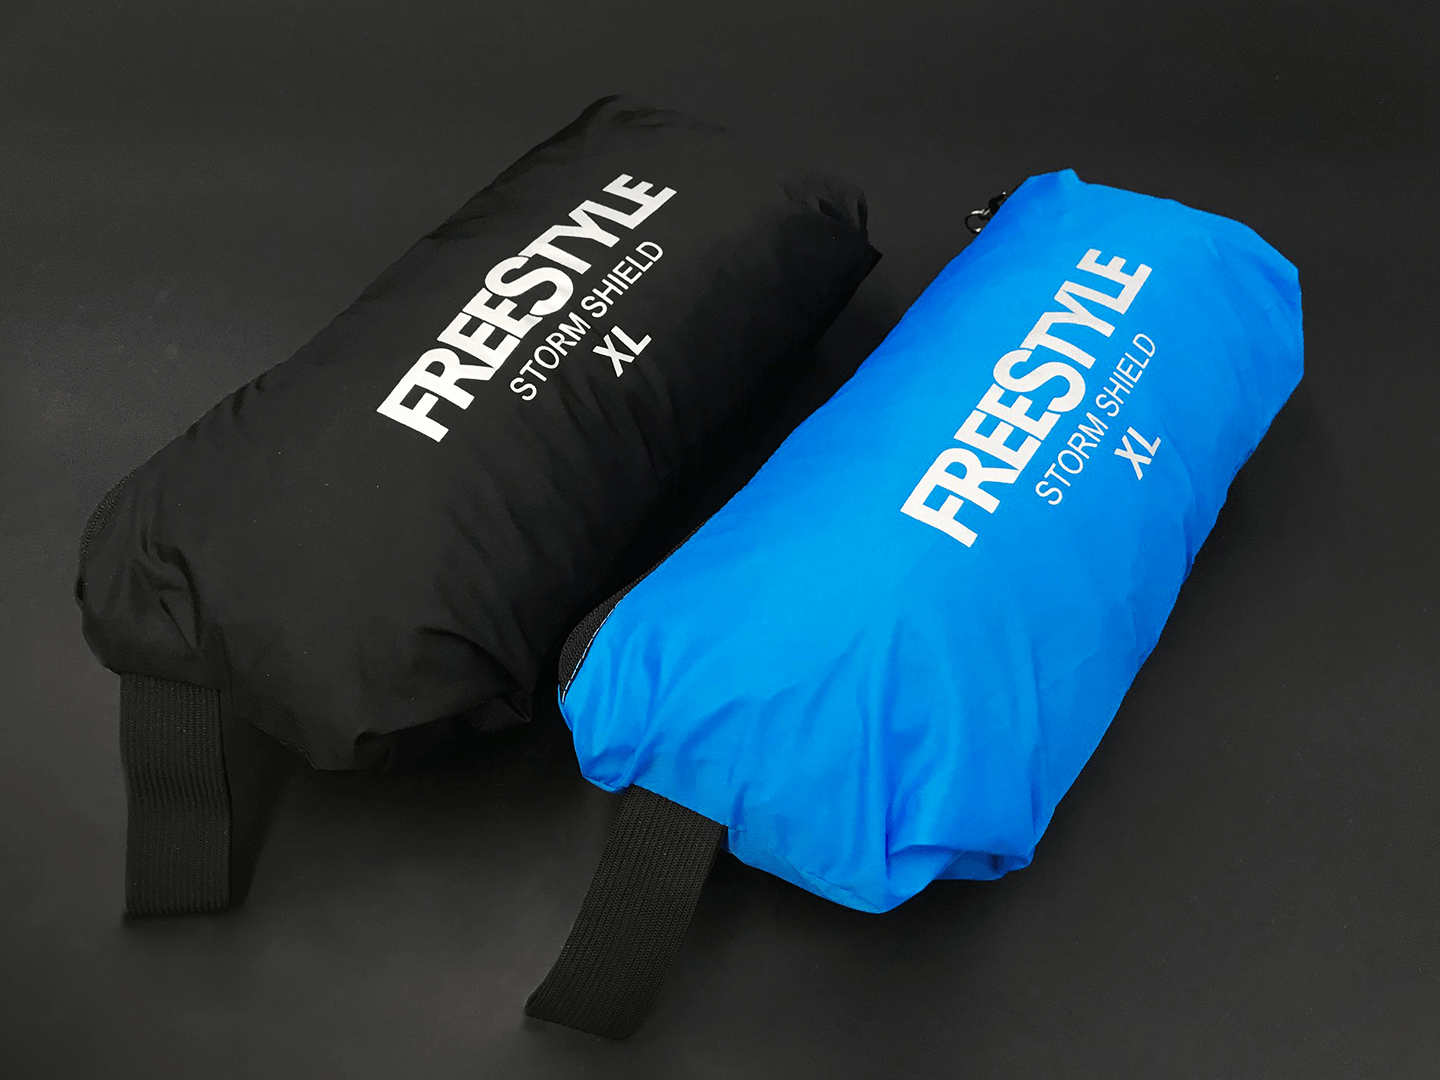 Freestyle Storm Shield - Schnell und einfach eingepackt